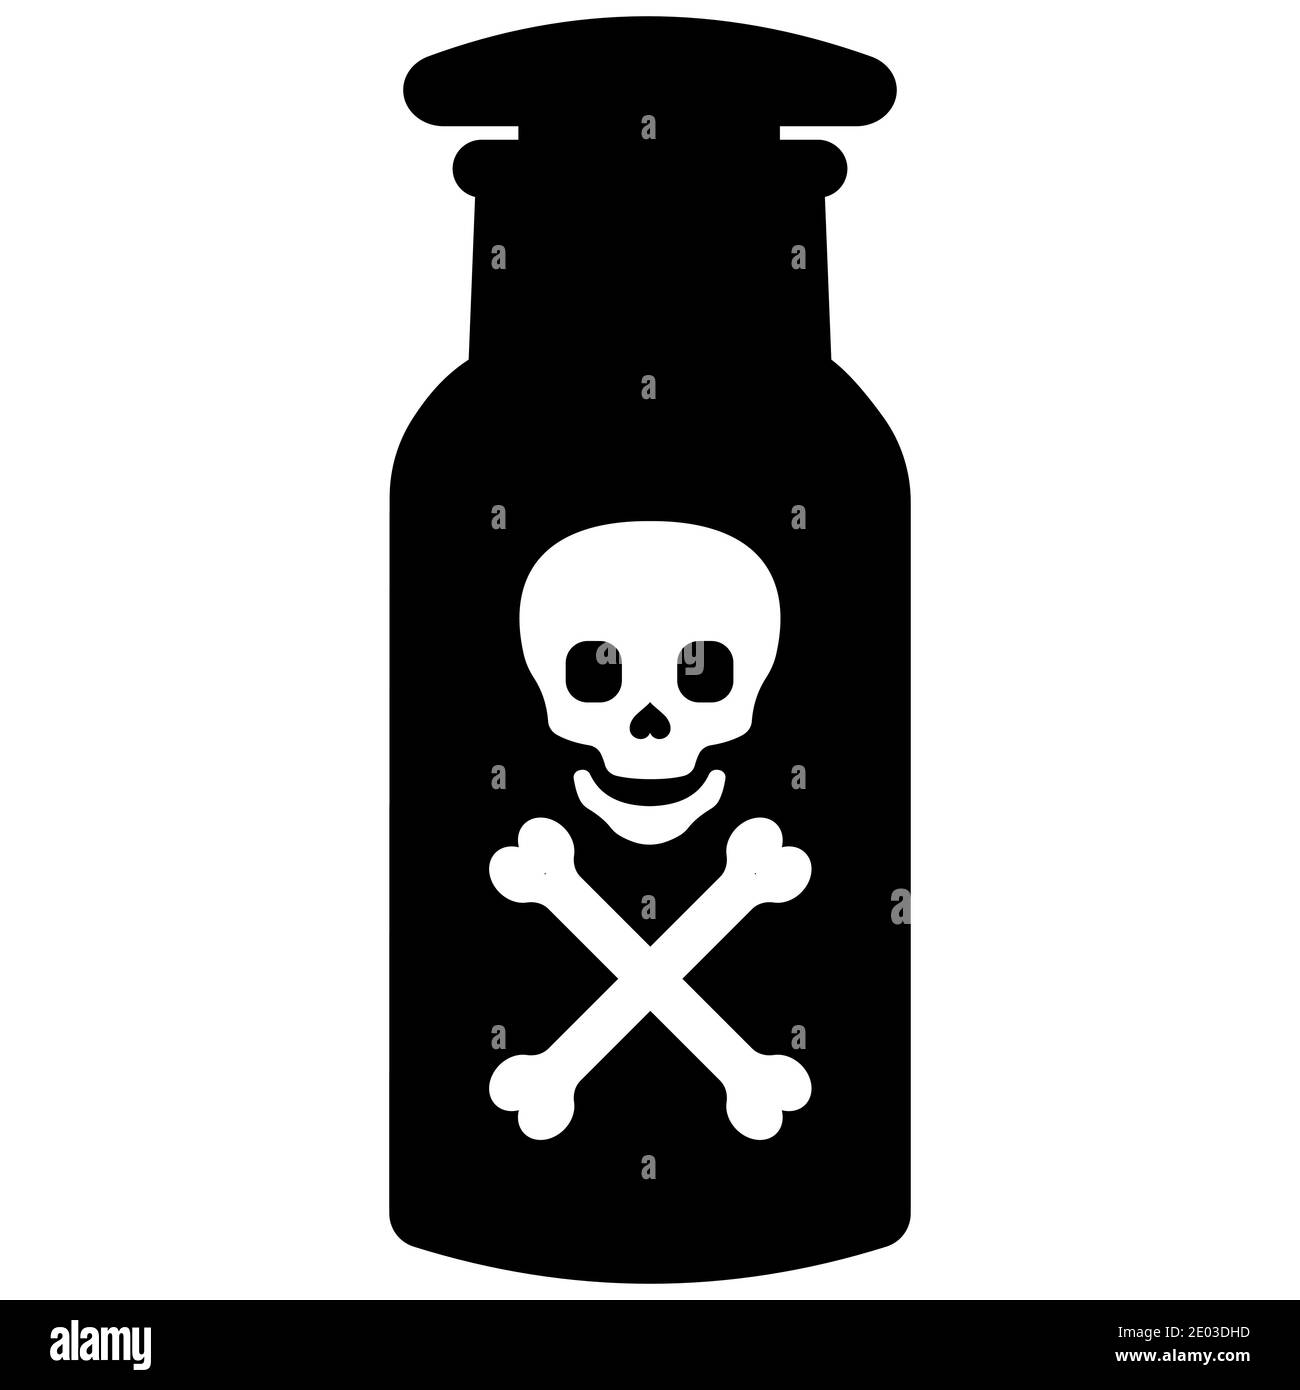 Giftige Giftflasche mit Totenschädel und Knochen, Vektor-Laborglas mit giftiger Substanz, tödliches Virusgift Stock Vektor